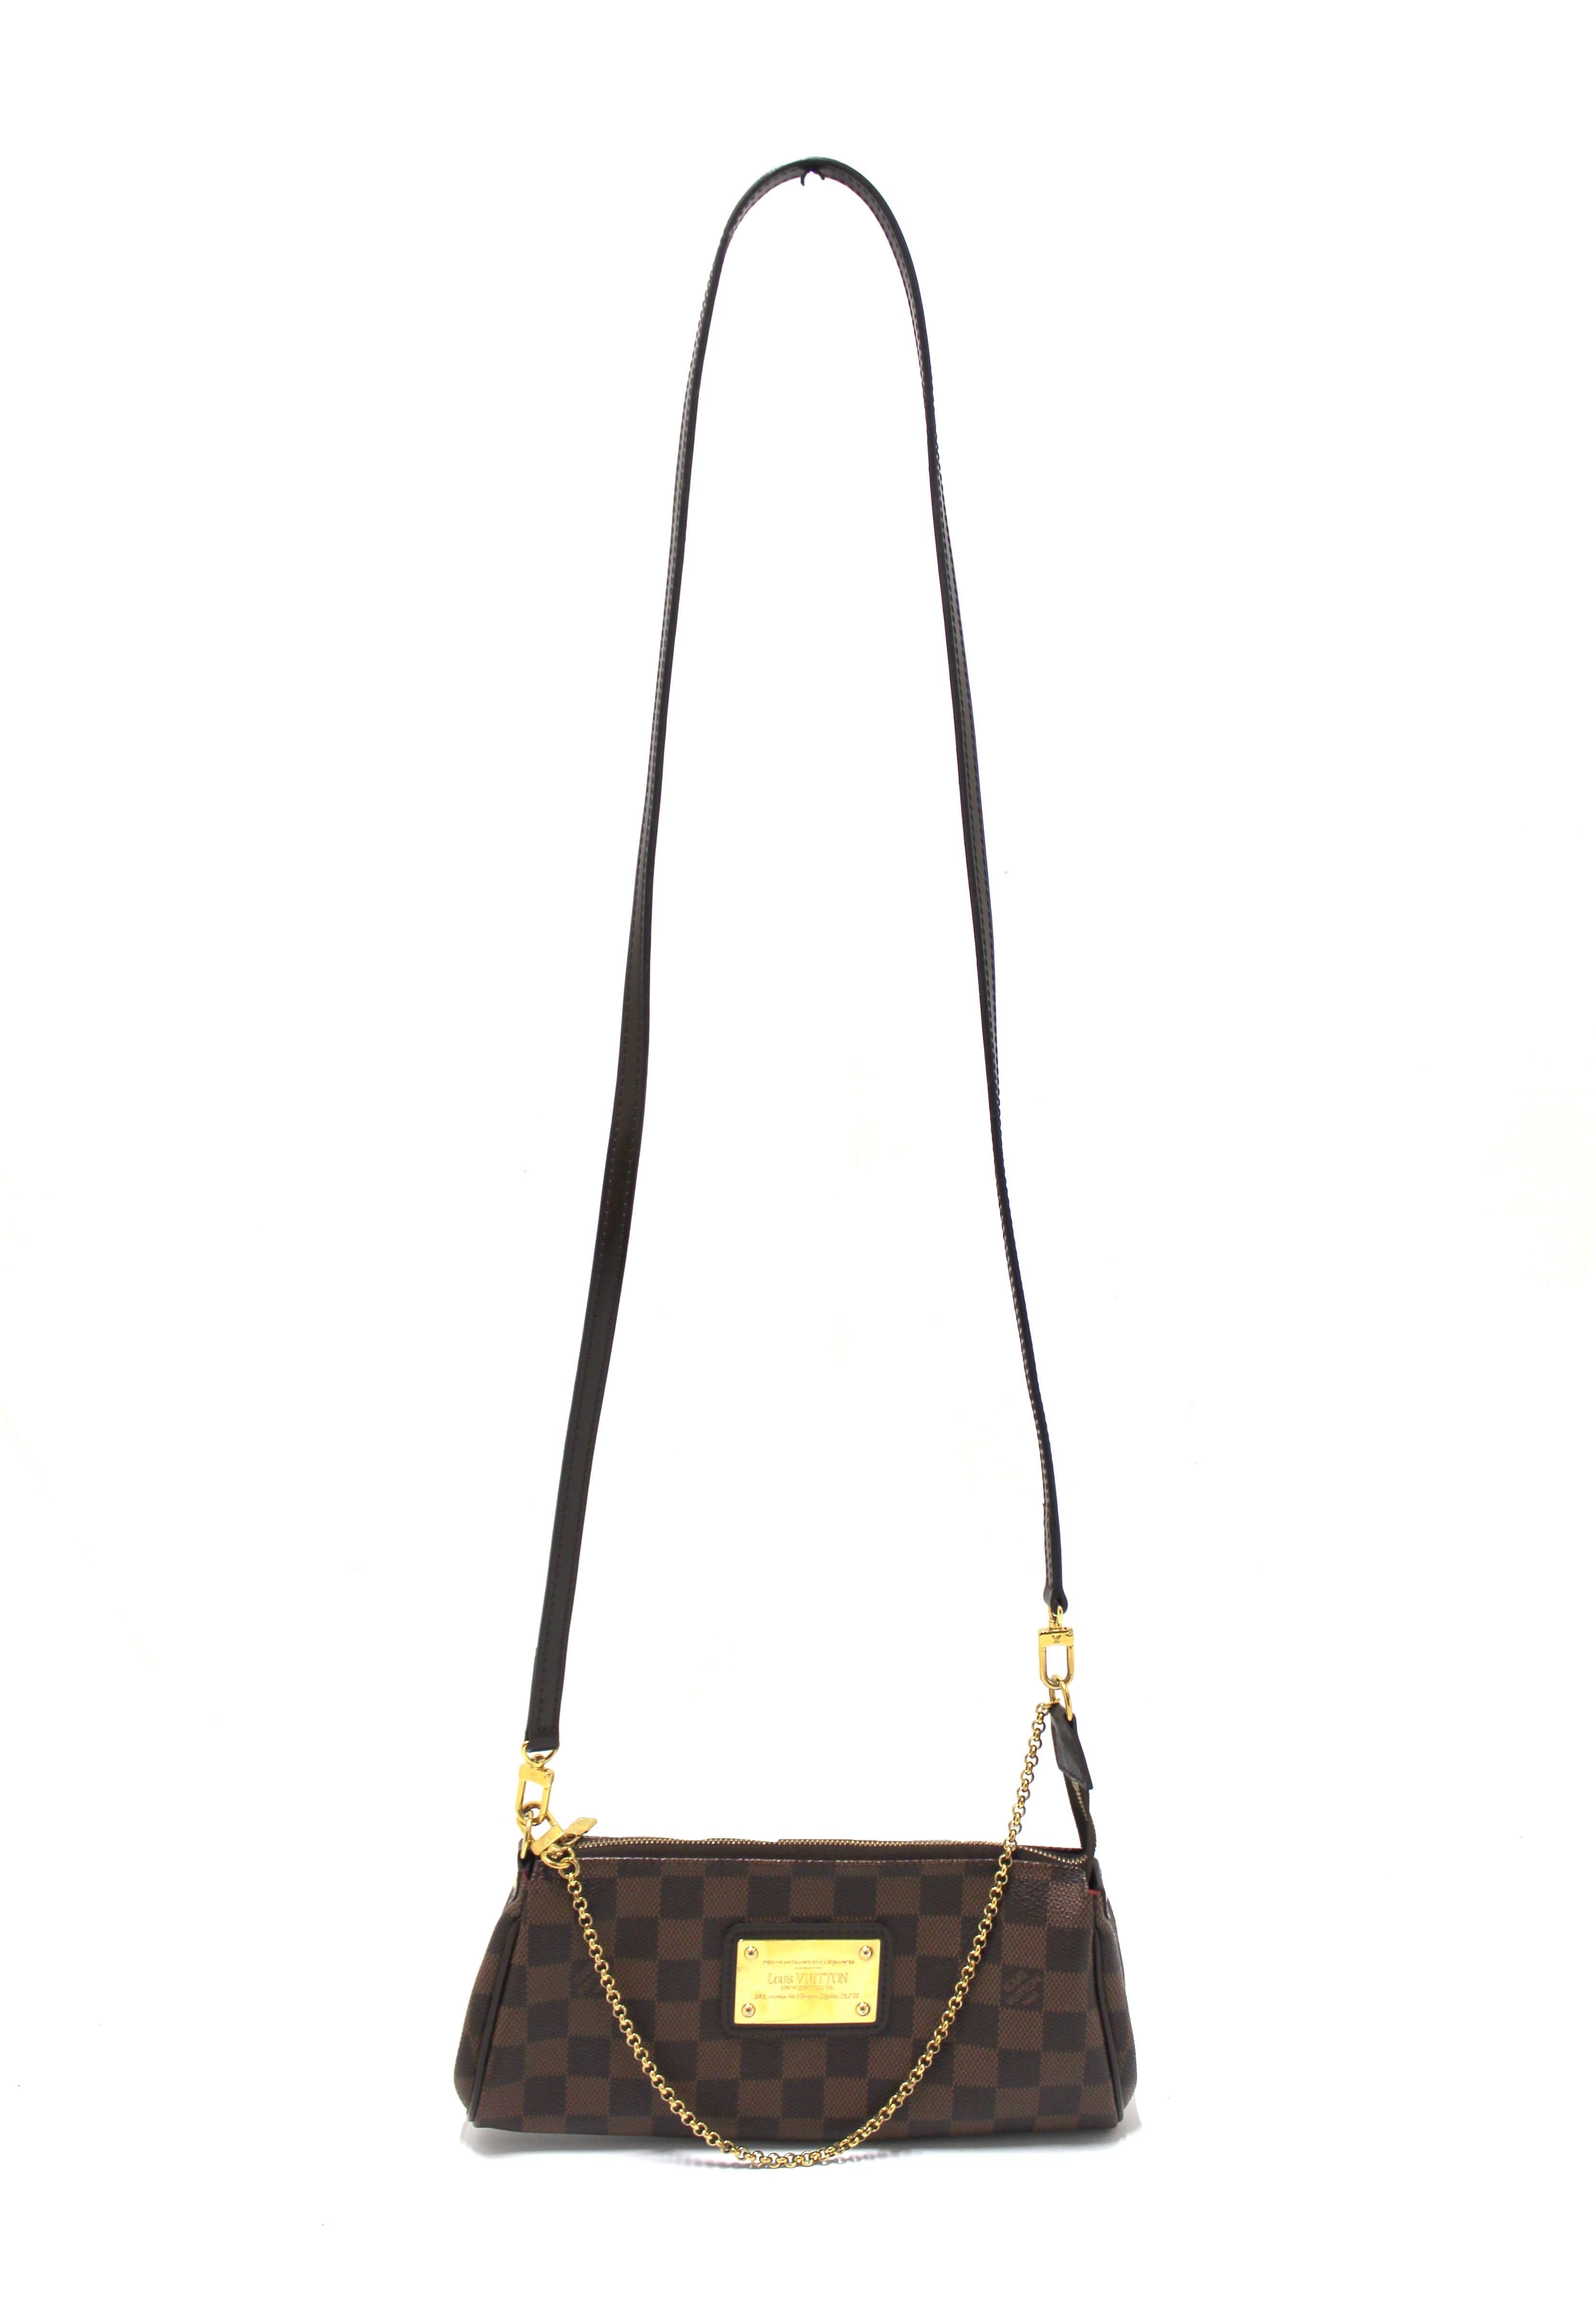 Authentic Louis Vuitton Damier Canvas Eva Clutch Handbag Article